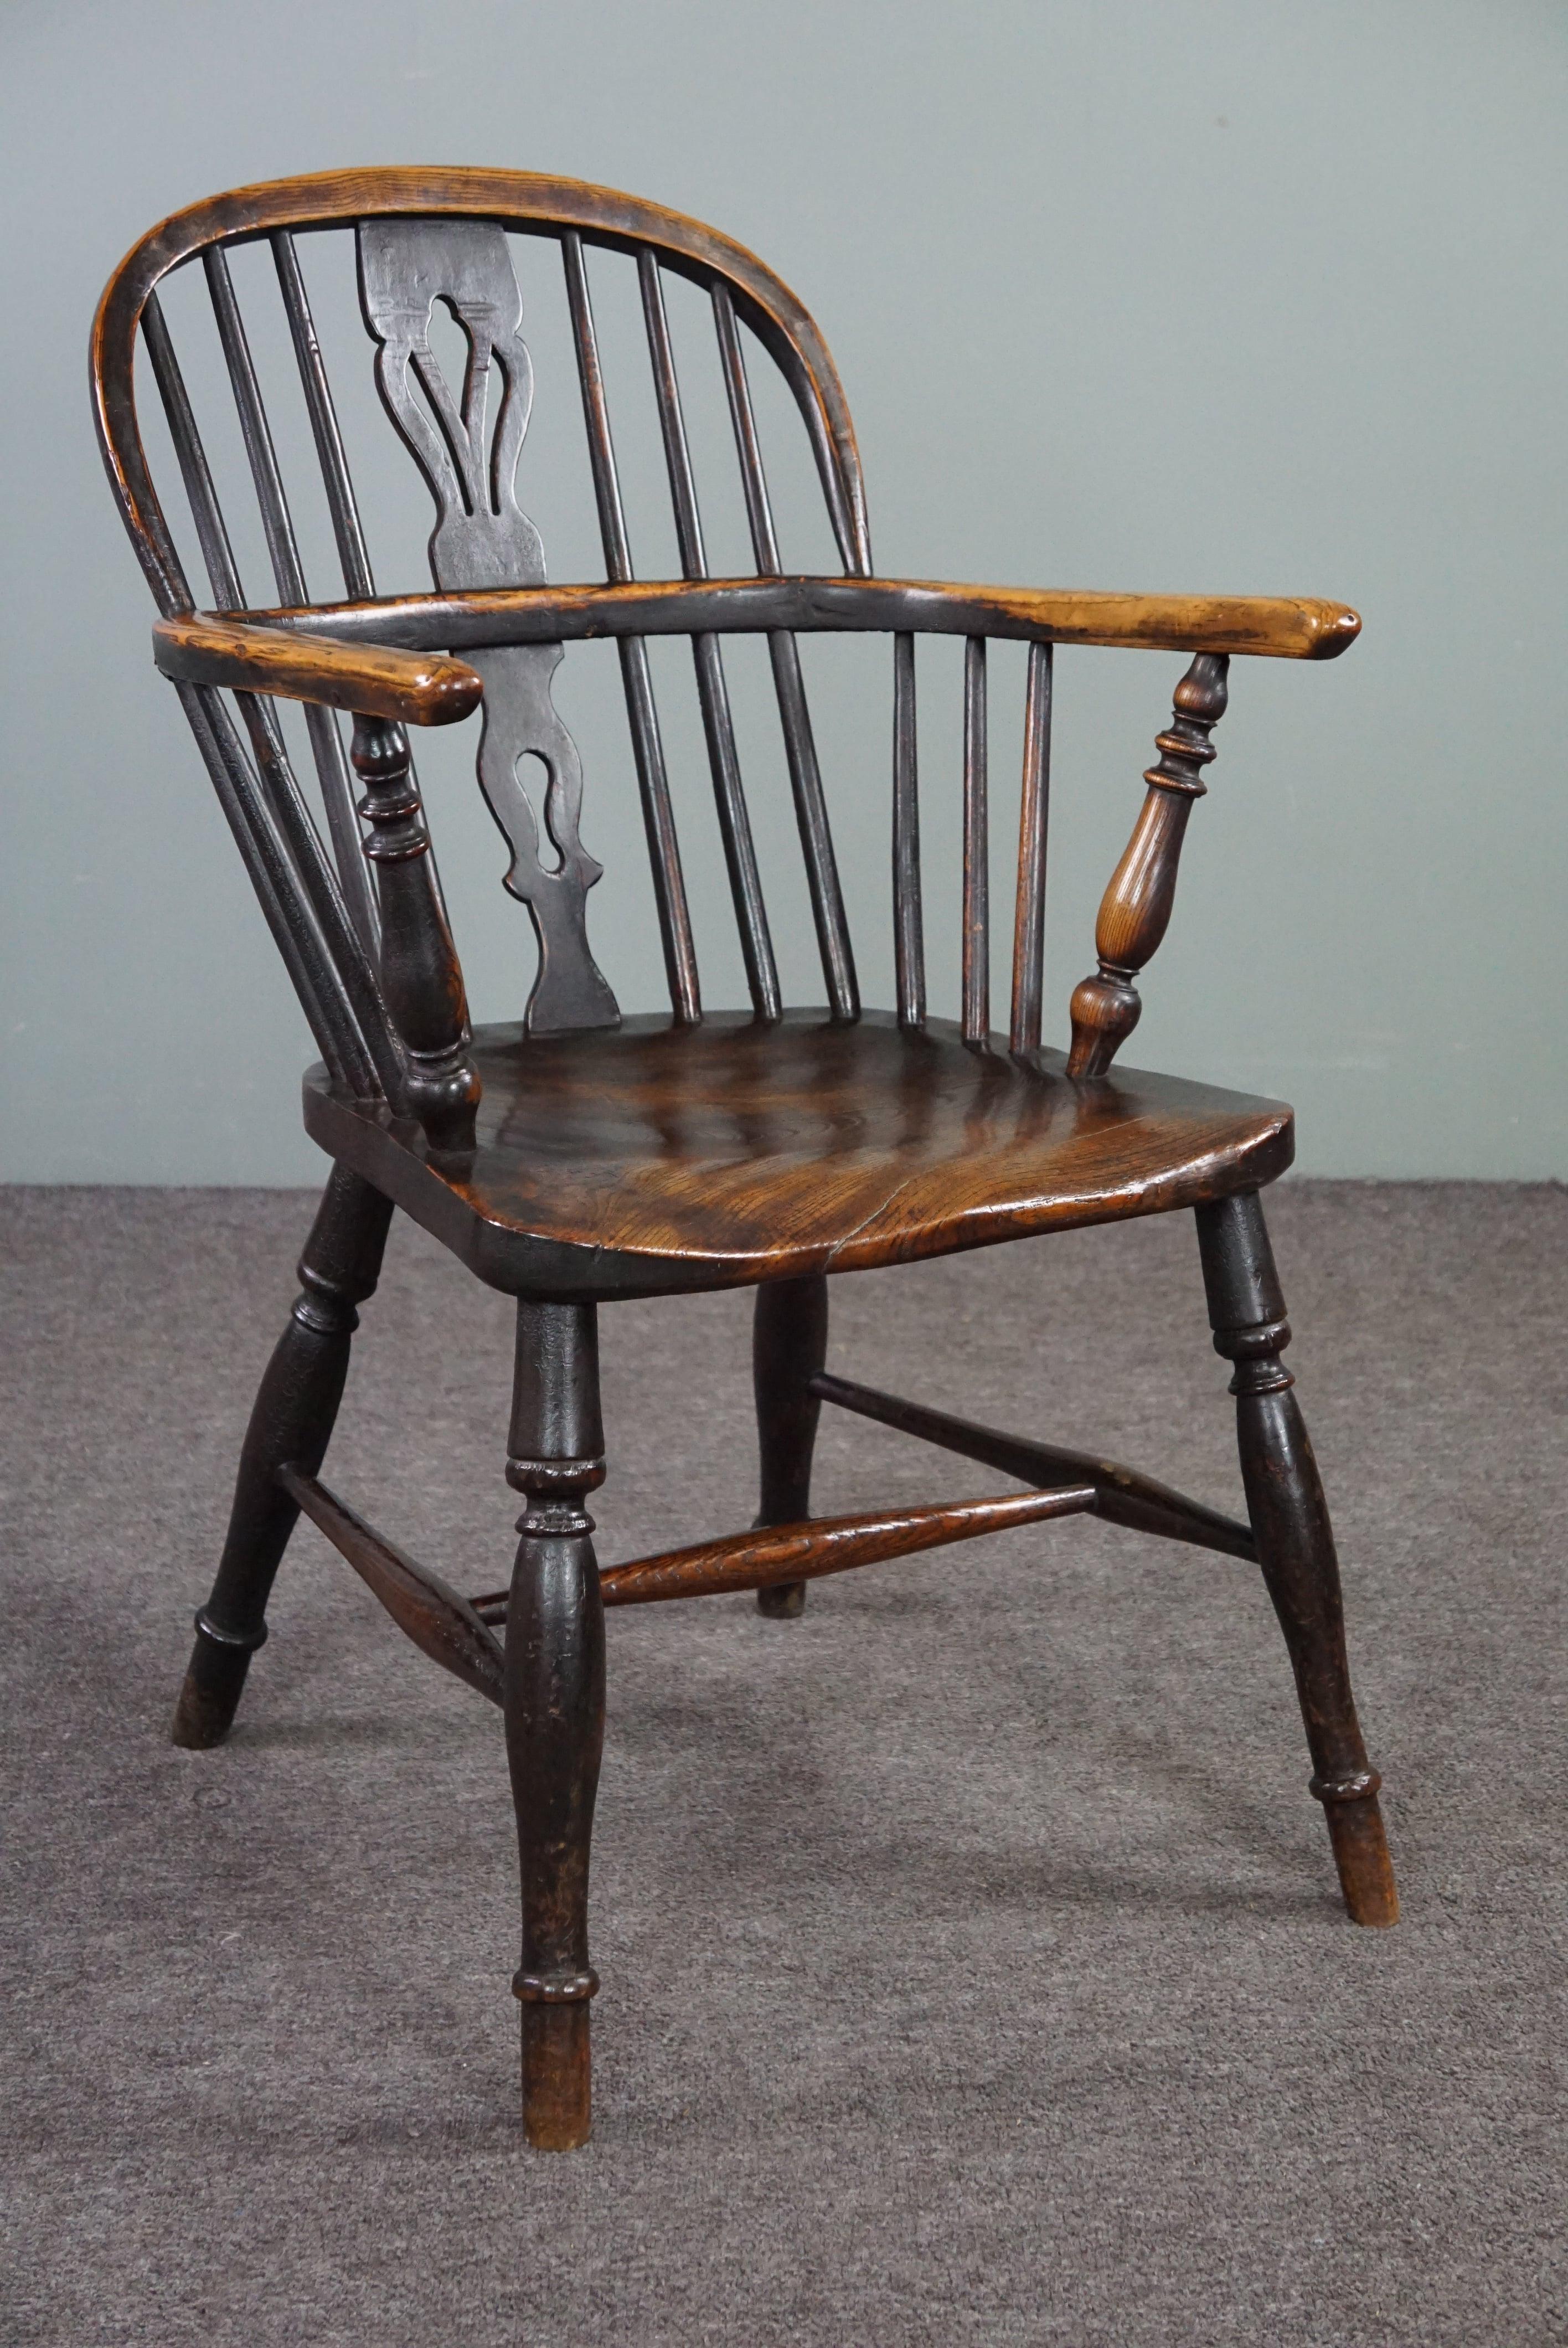 Dieser schöne antike Stuhl ist aus massivem Holz gefertigt und hat eine schöne Patina.

Dieser elegante antike englische Windsor-Stuhl mit niedriger Rückenlehne aus dem frühen bis mittleren 18. Jahrhundert hat eine vergitterte Rückenlehne und einen